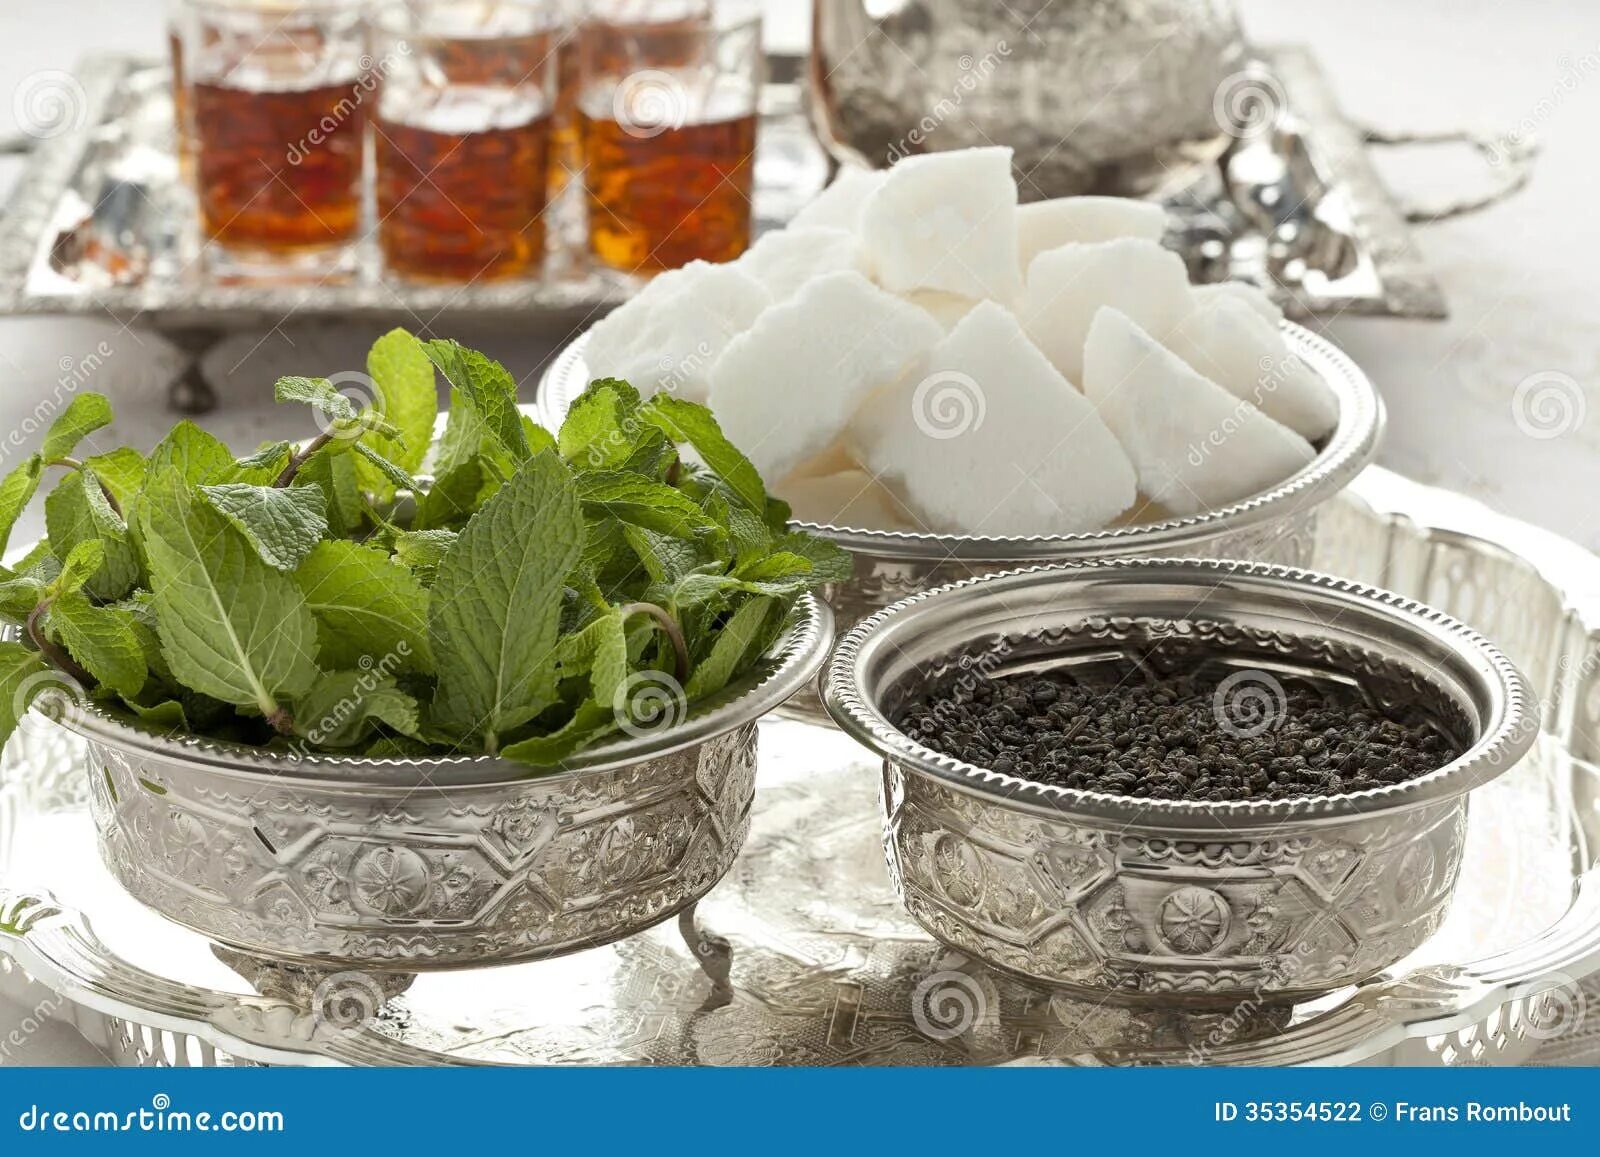 Чай с сахаром. Марокканский чай. Чайный сахар. Зеленый чай с мятой и сахаром Марокко.